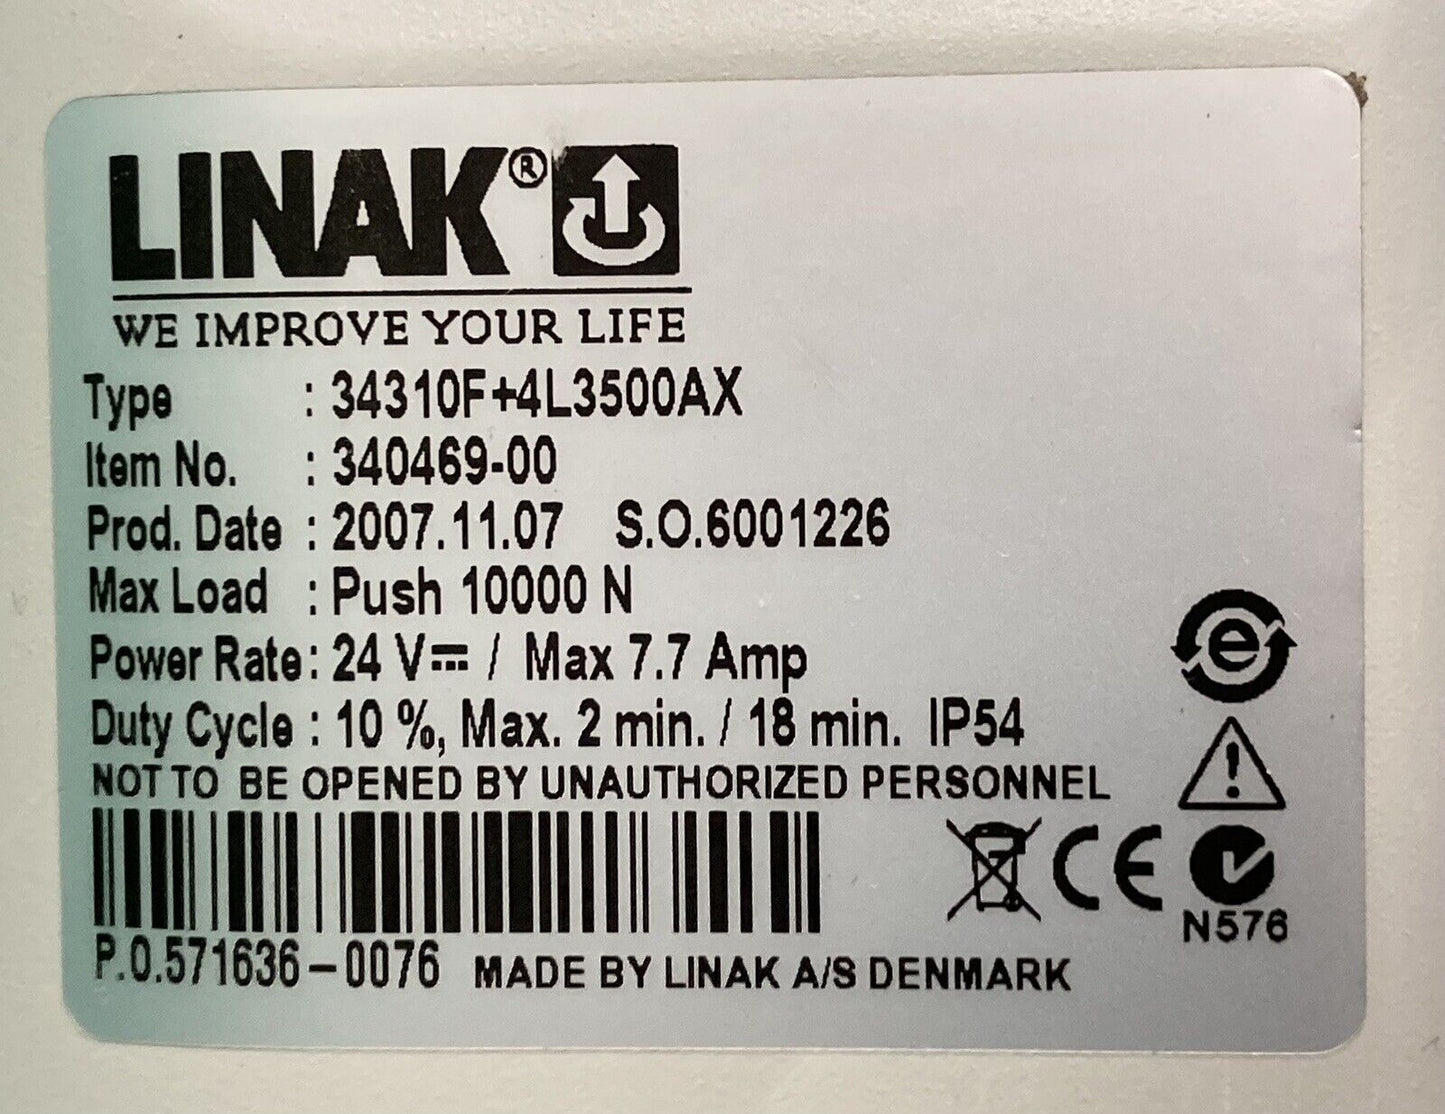 LINAK Patient Lift & Hoist Actuator Motor 340469-00 / 34310F+4L3500AX #J524